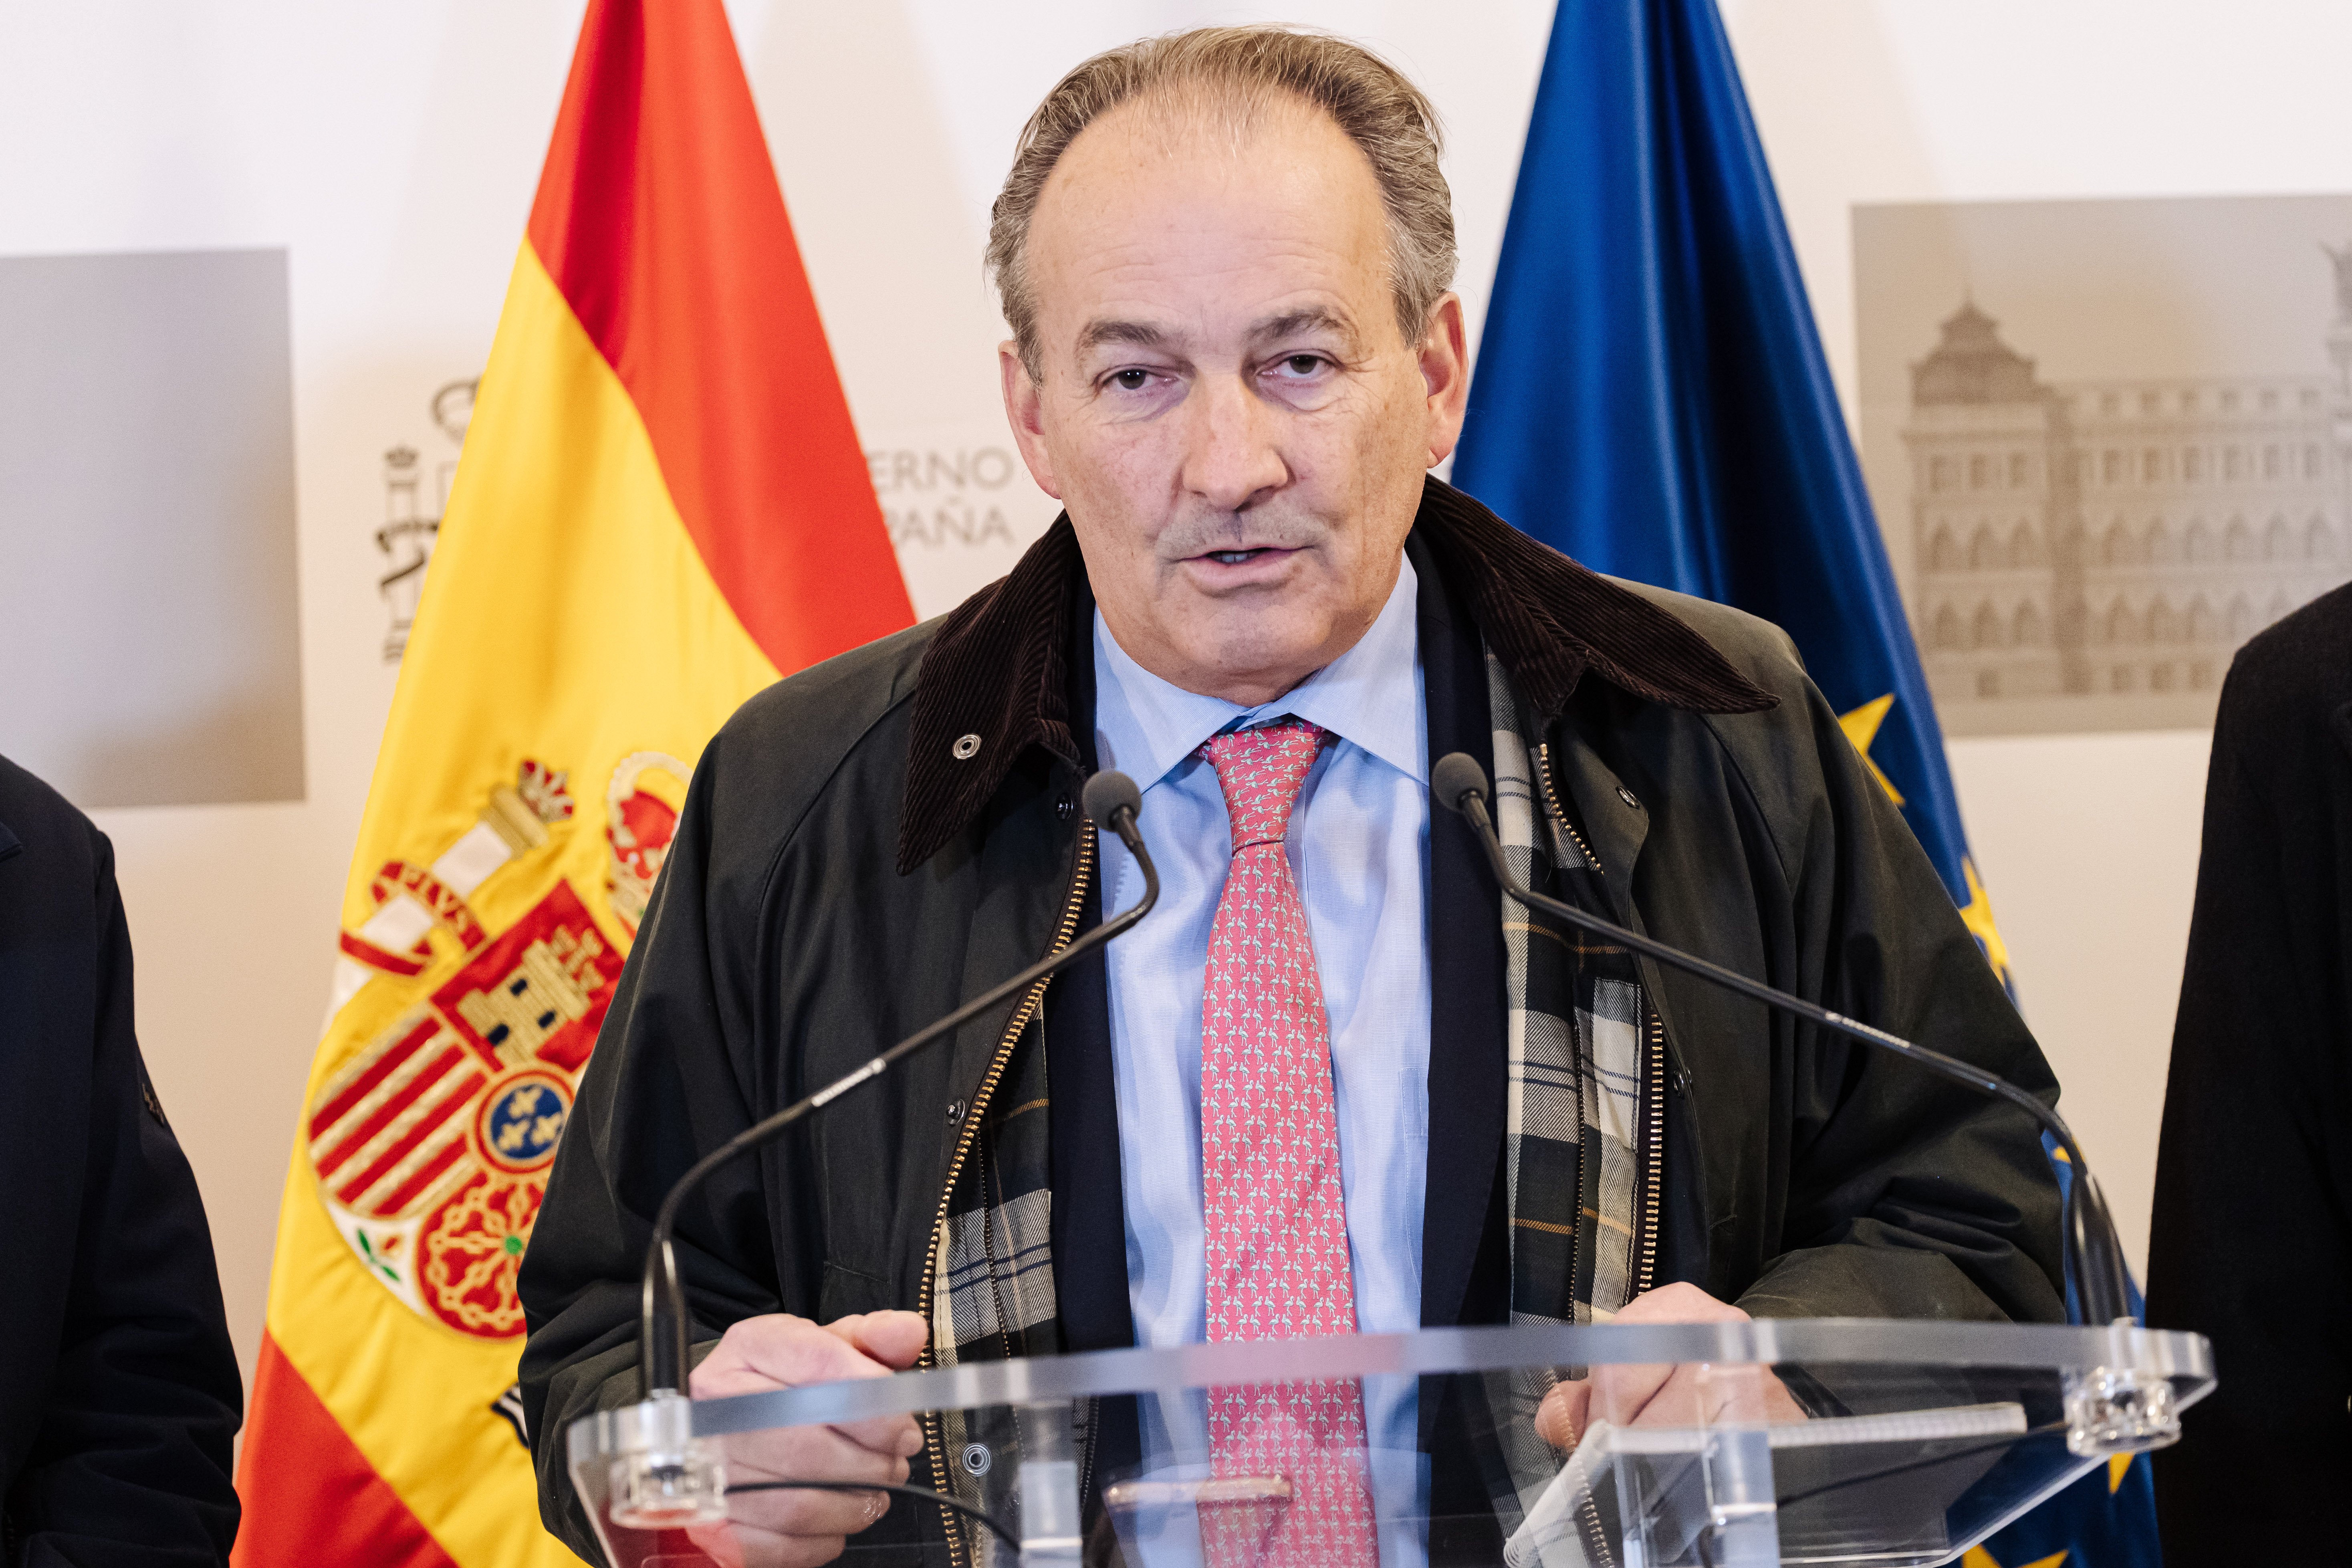 José Luis Aguirre Vox Europa Press